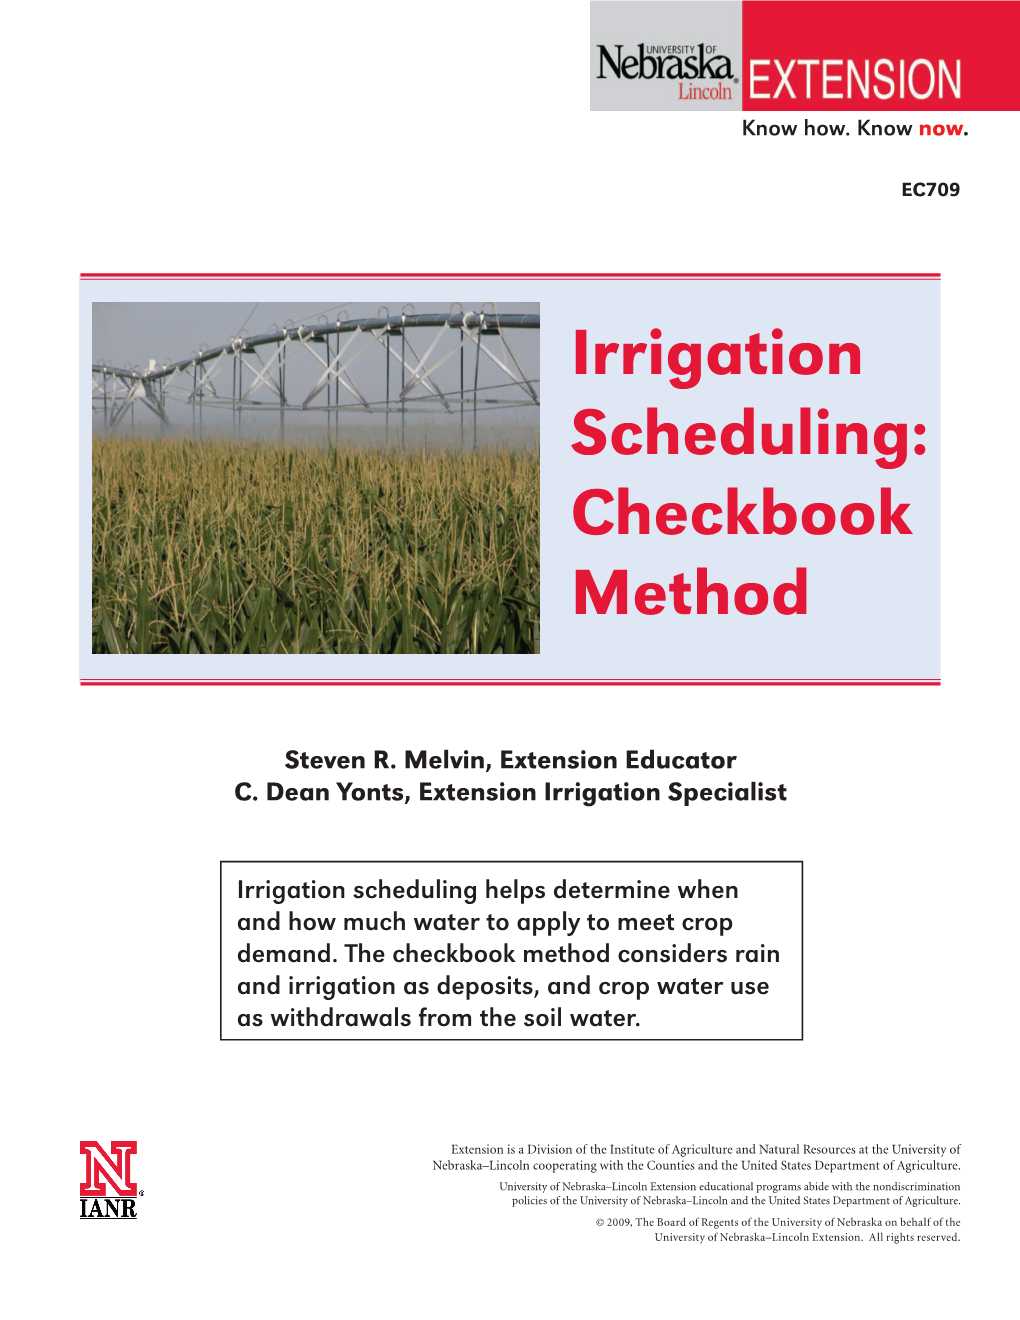 Irrigation Scheduling: Checkbook Method